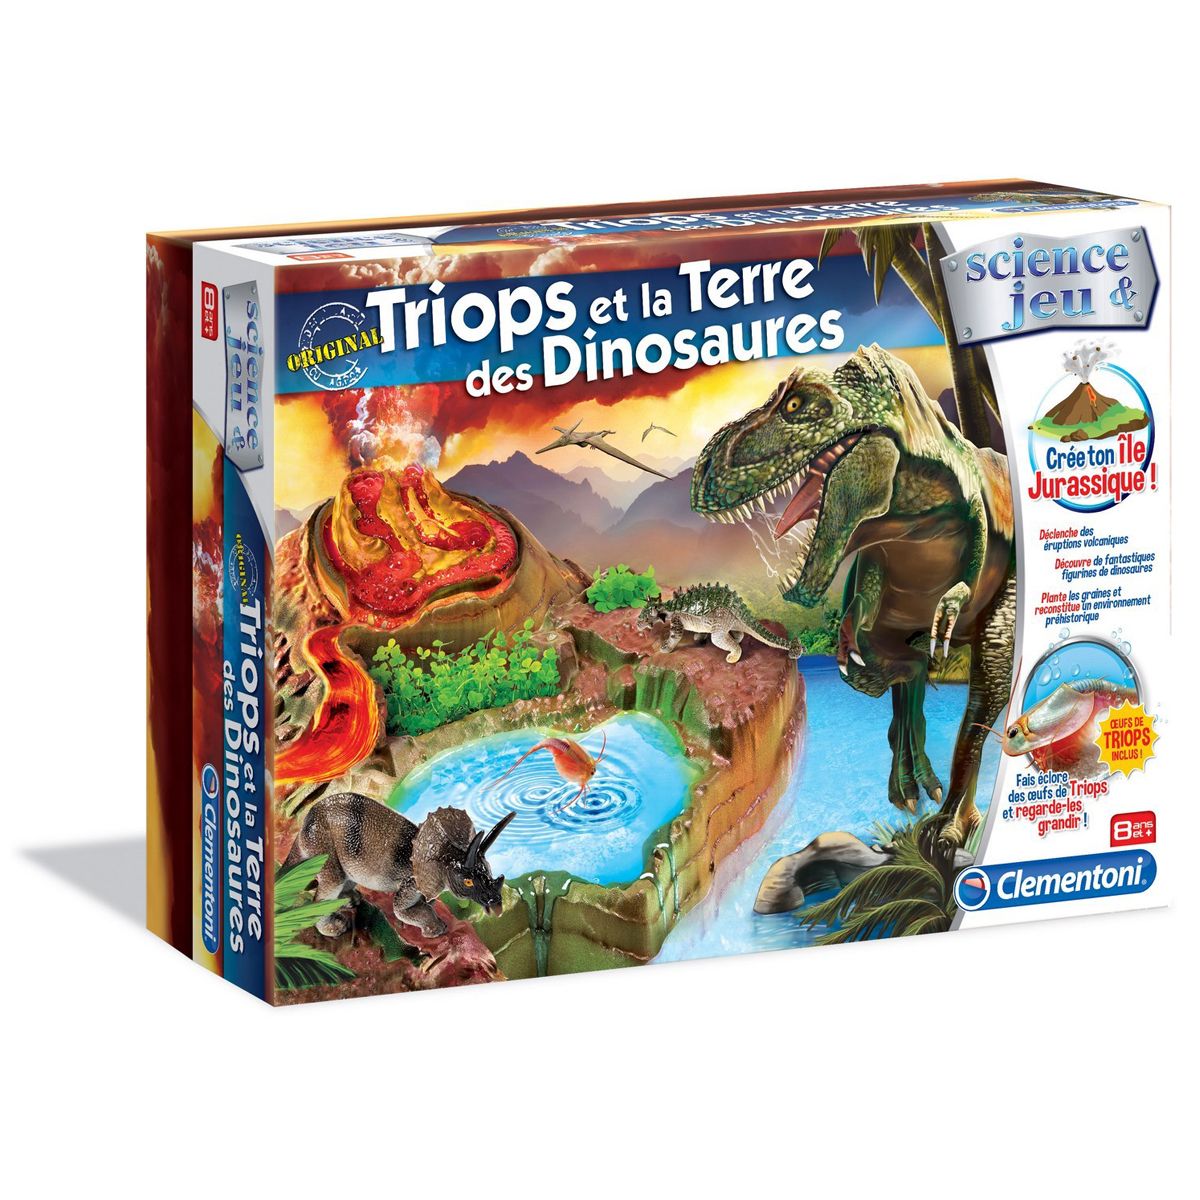 Triops Et Le Monde Des Dinosaures